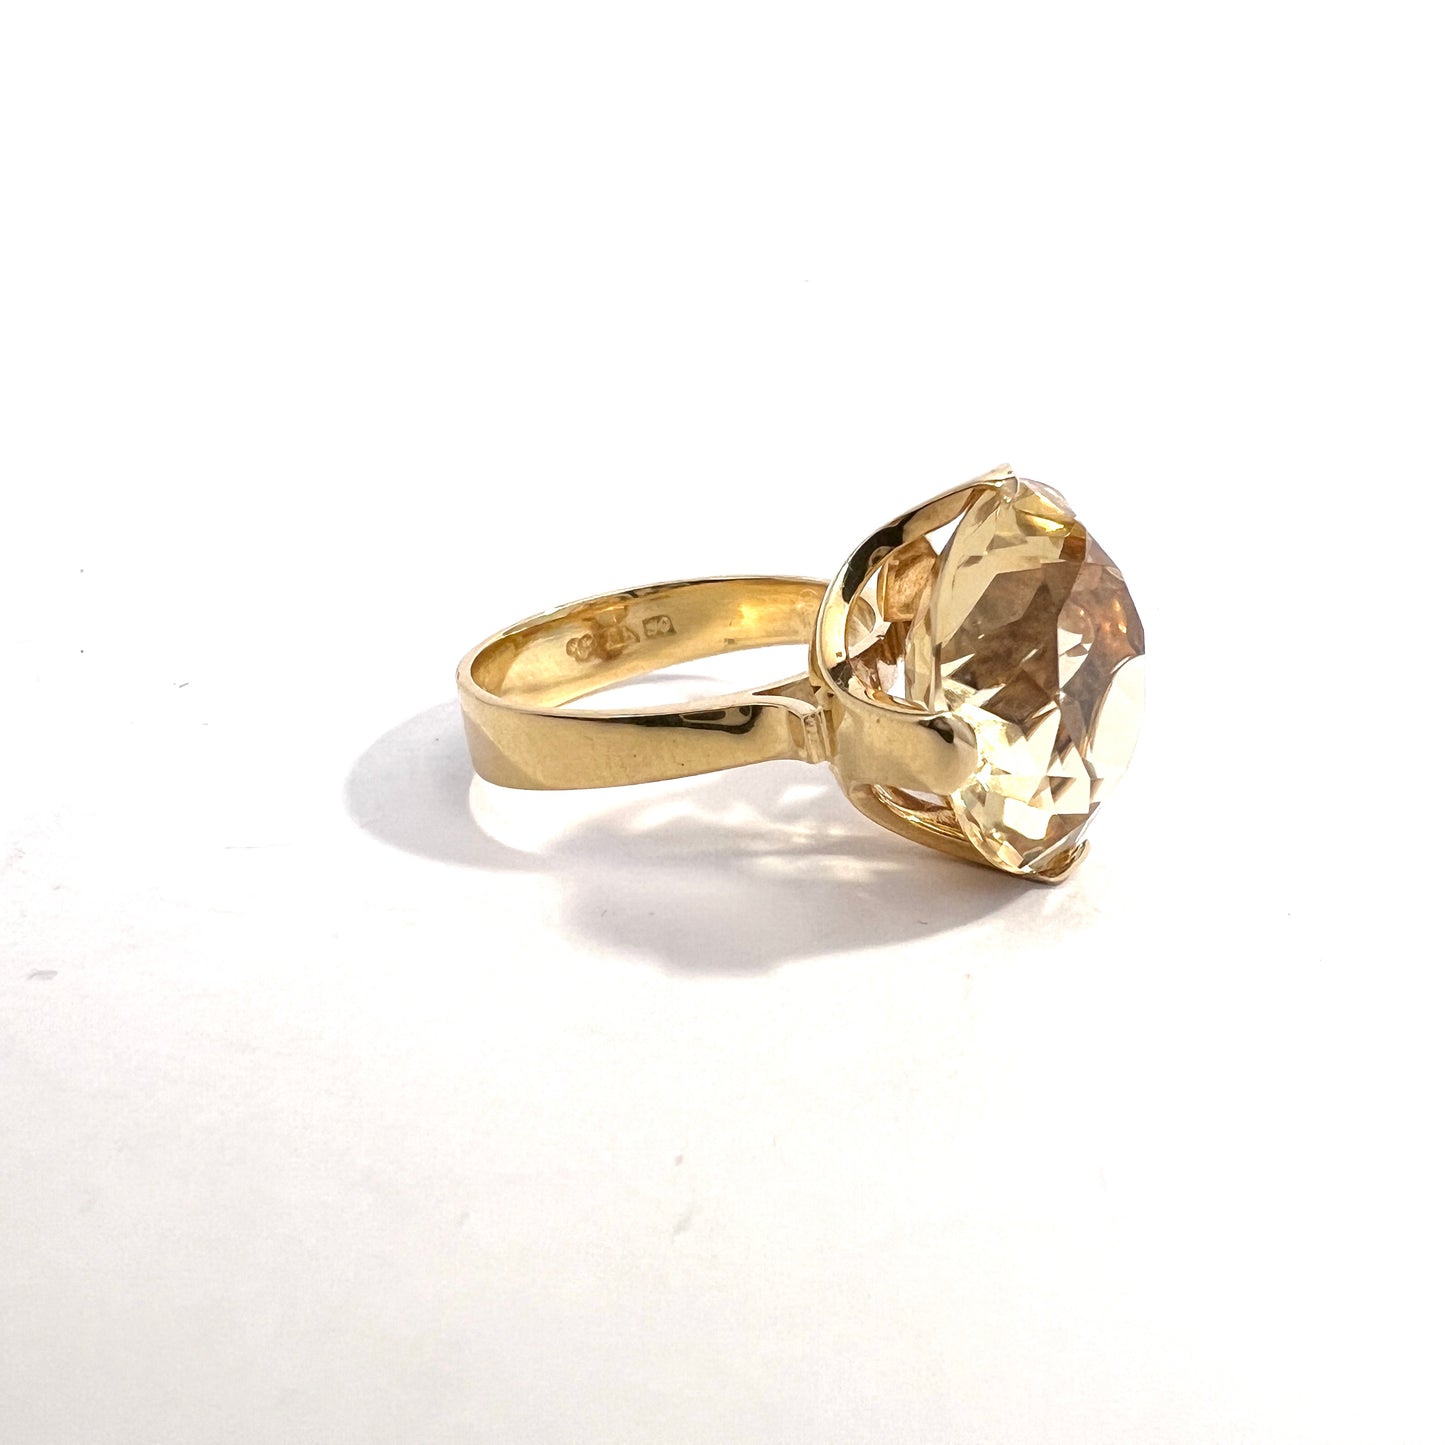 Alton, Sweden 1968. Vintage 18k Gold Citrine Cocktail Ring.